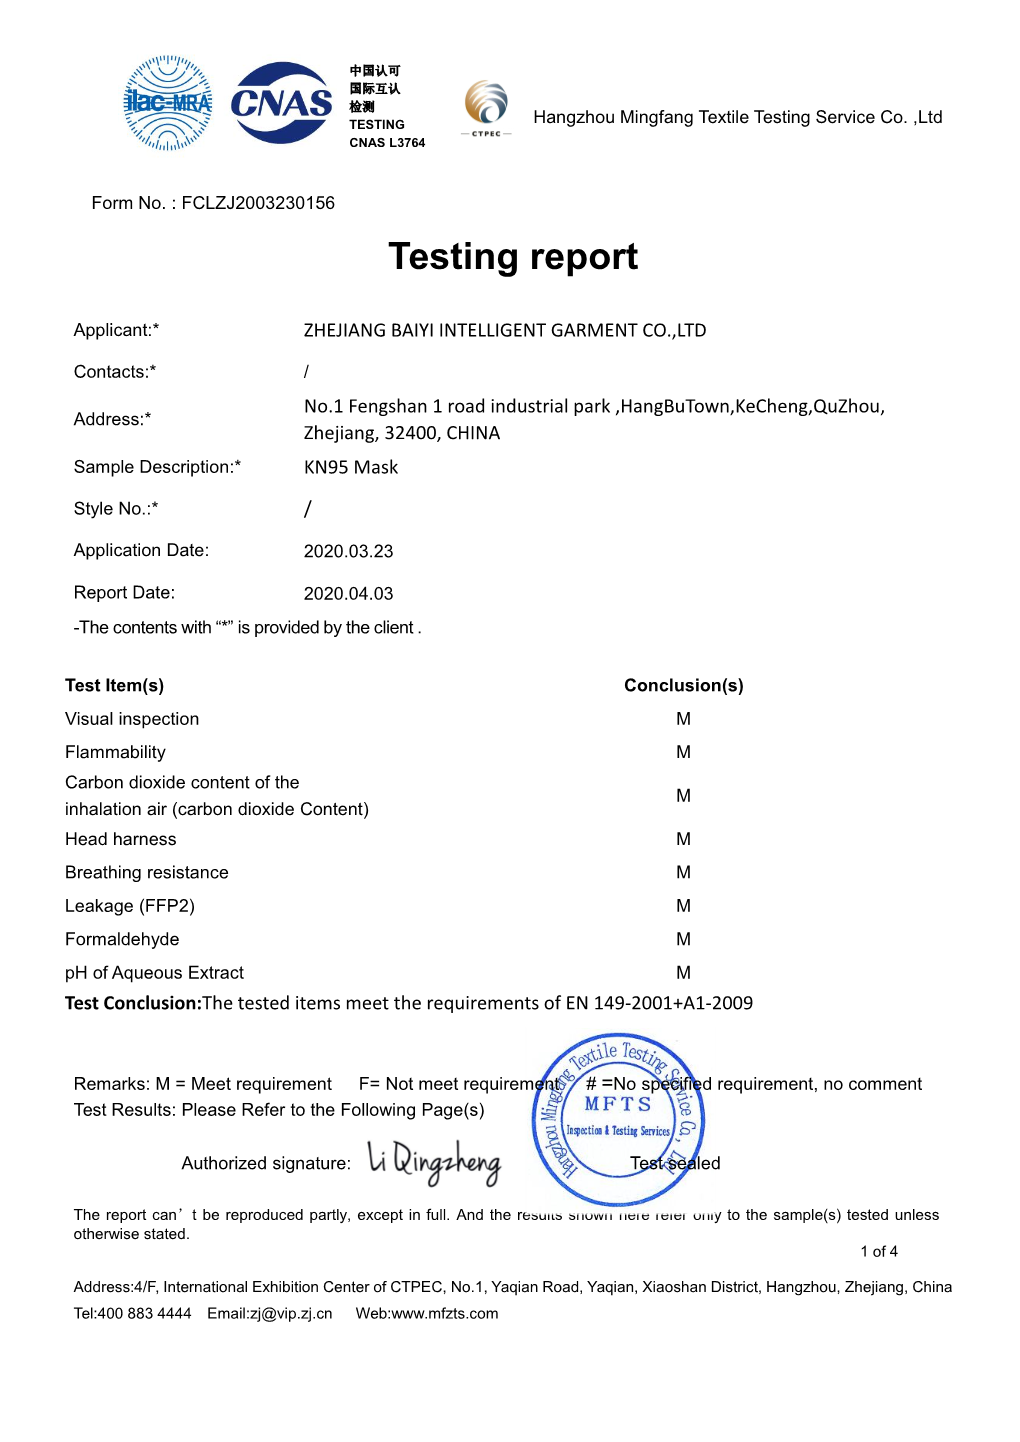 Testing Report